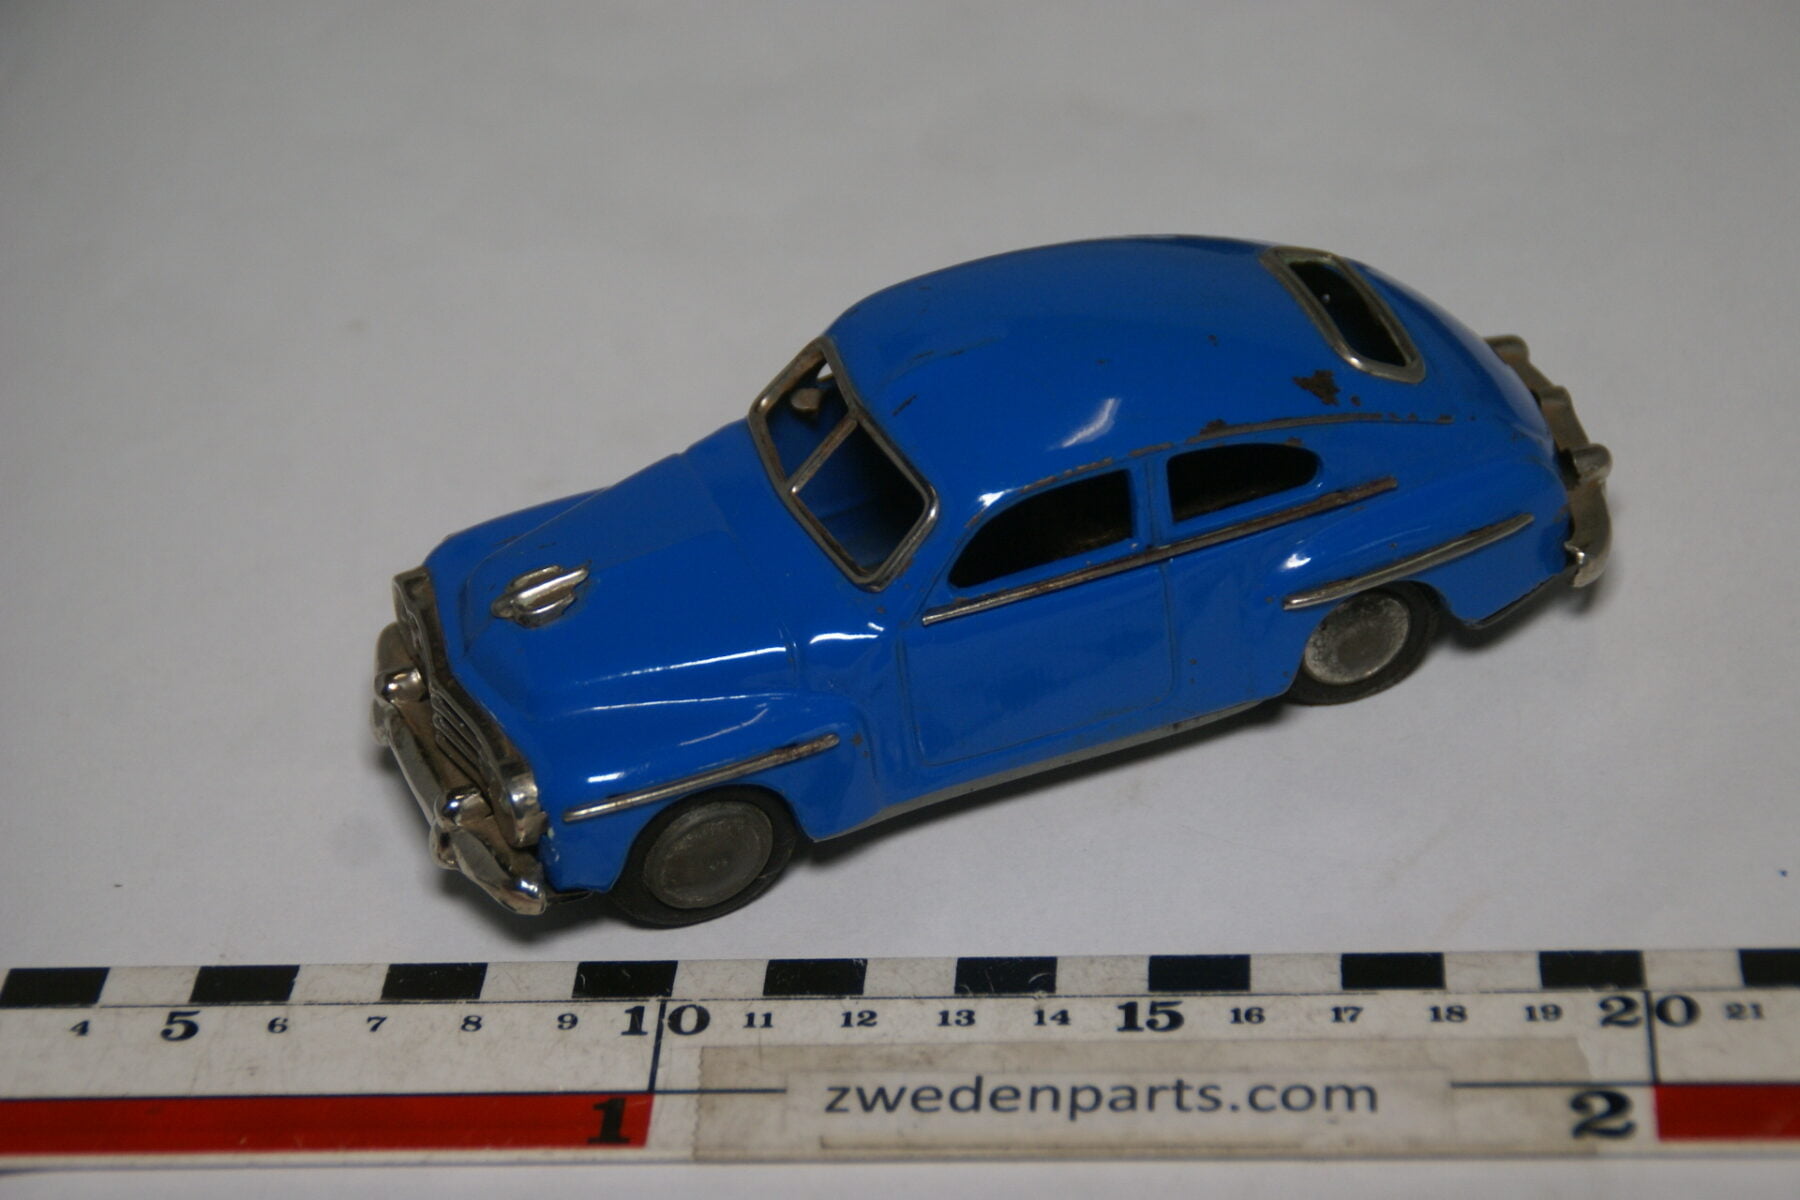 DSC02164 ca. 1957 miniatuur Volvo 444 Katterug blauw ca140 mm lang, blik zeer goede staat-7b50c4cd